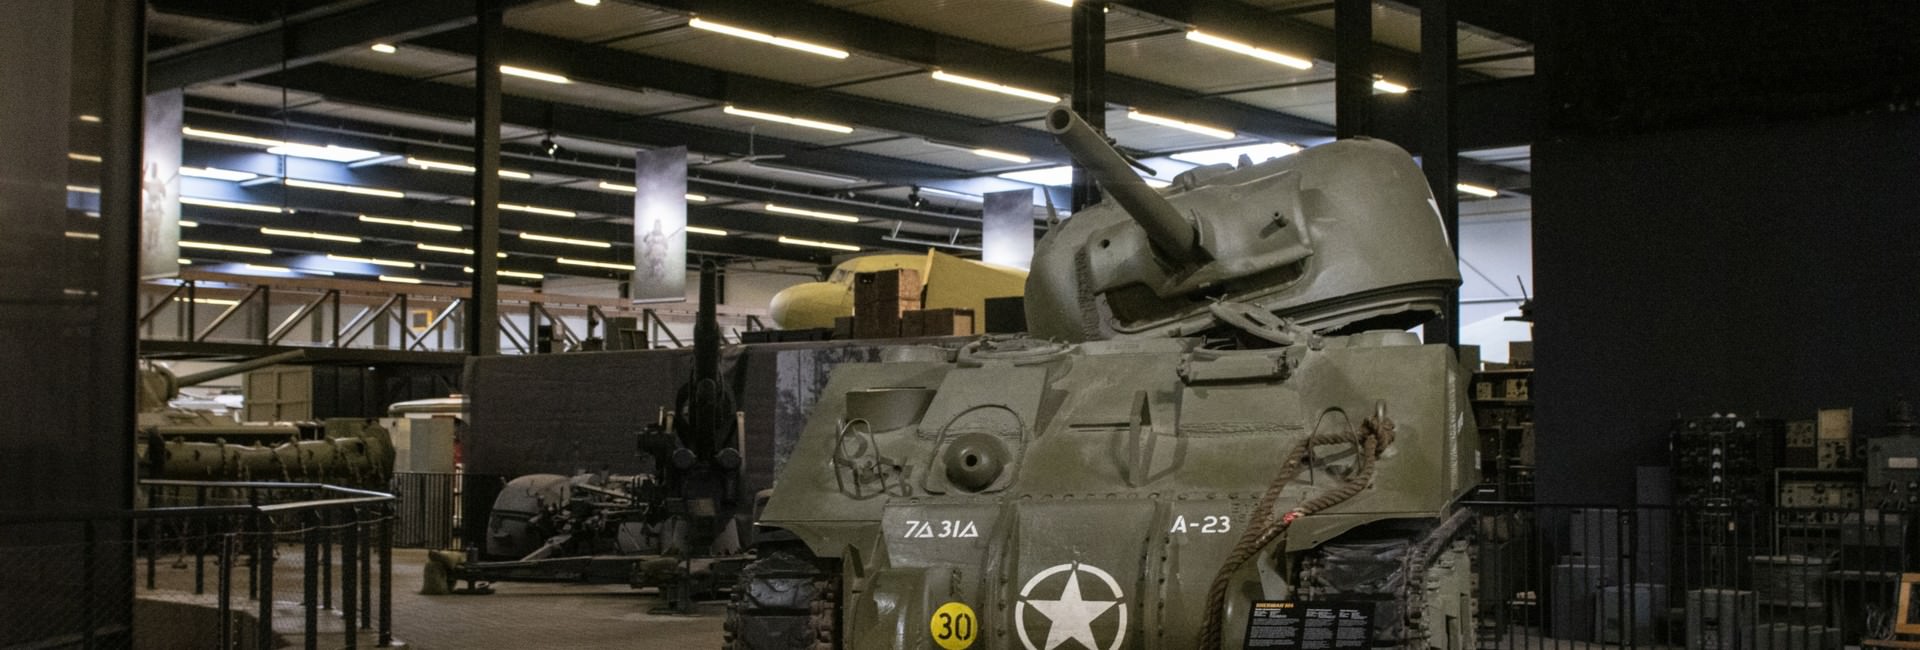 oorlogsmuseum - Collectie militair materieel